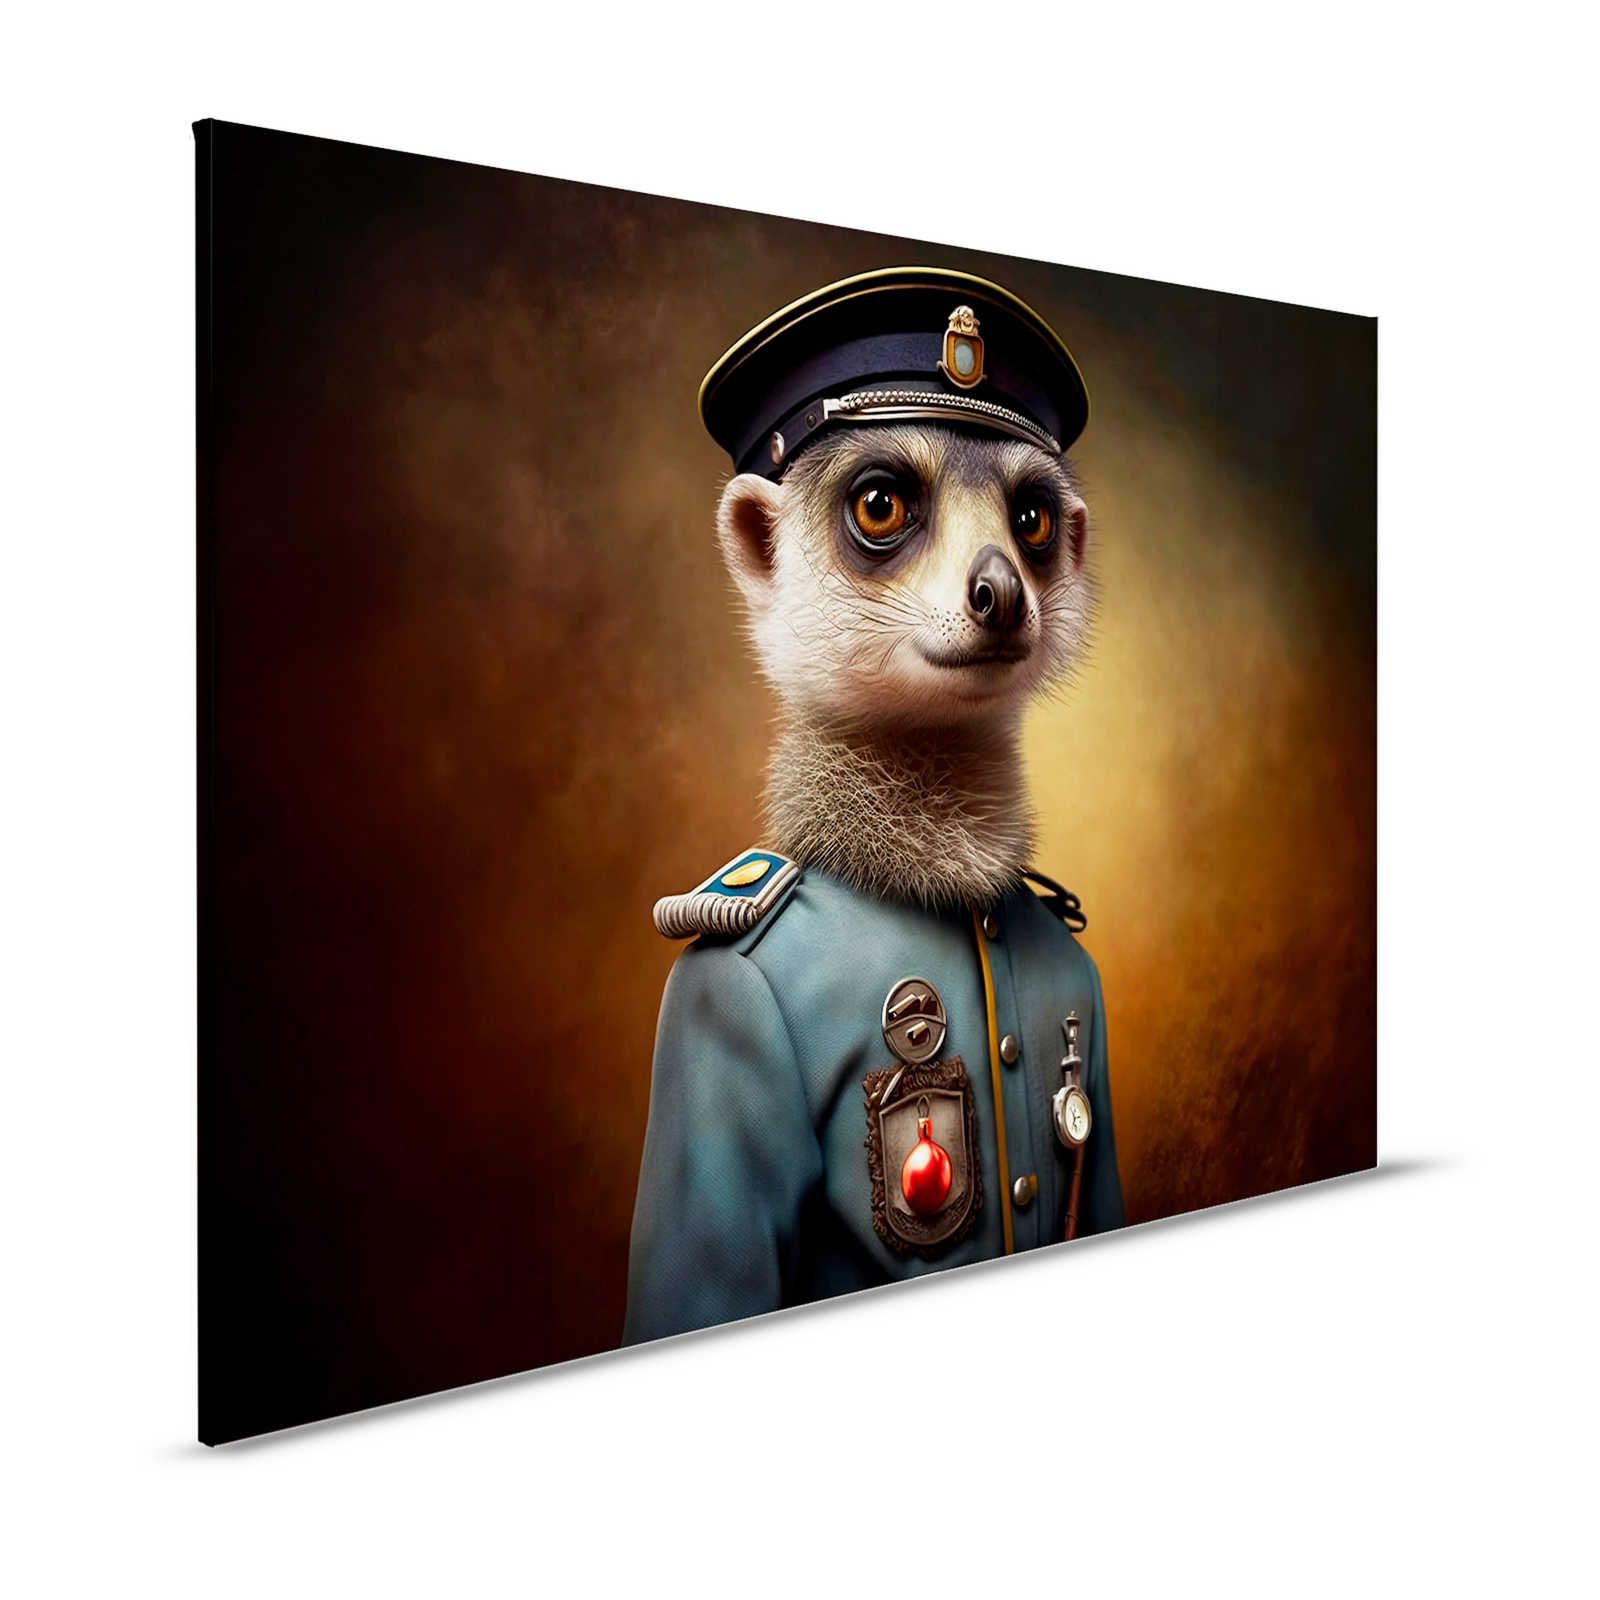 KI Pintura en lienzo »strict suricata« - 120 cm x 80 cm
